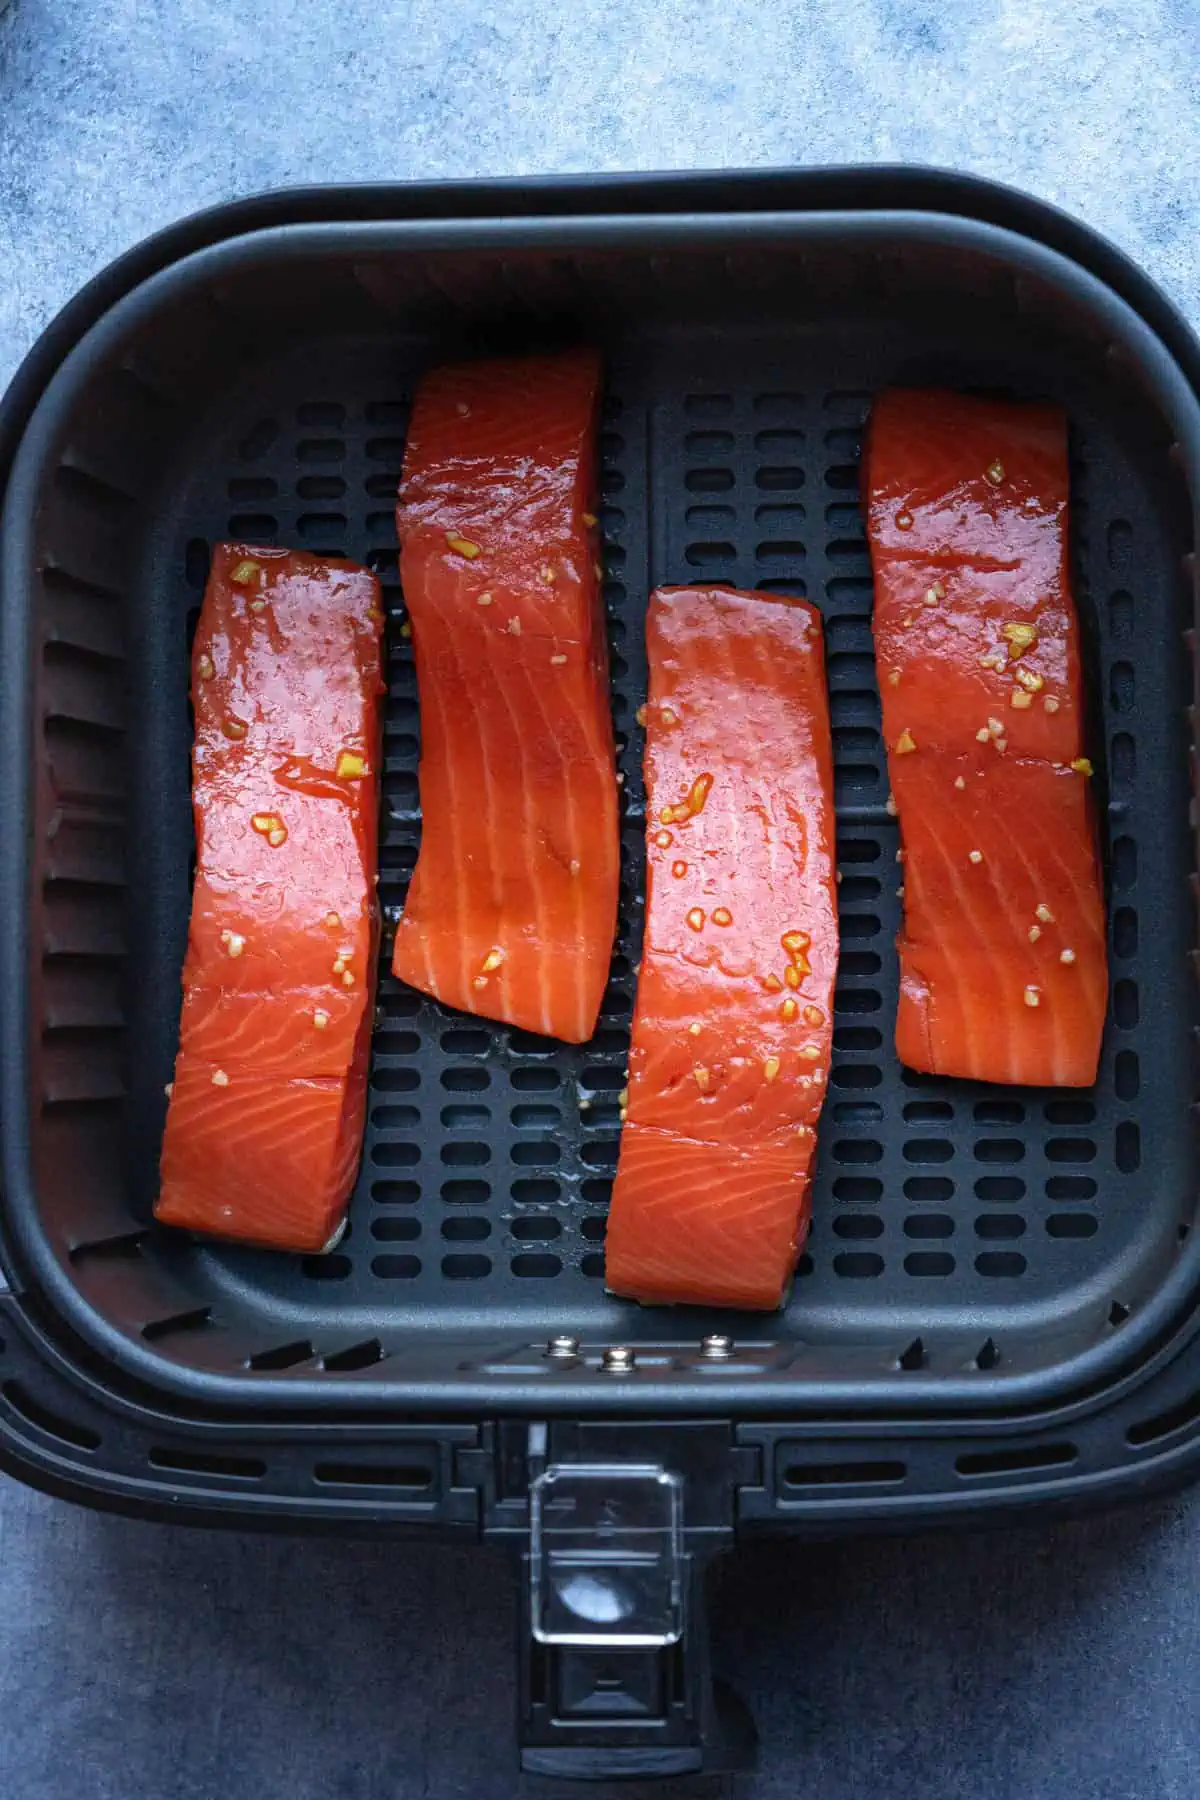 Teriyaki salmon inside the air fryer basket before air frying.